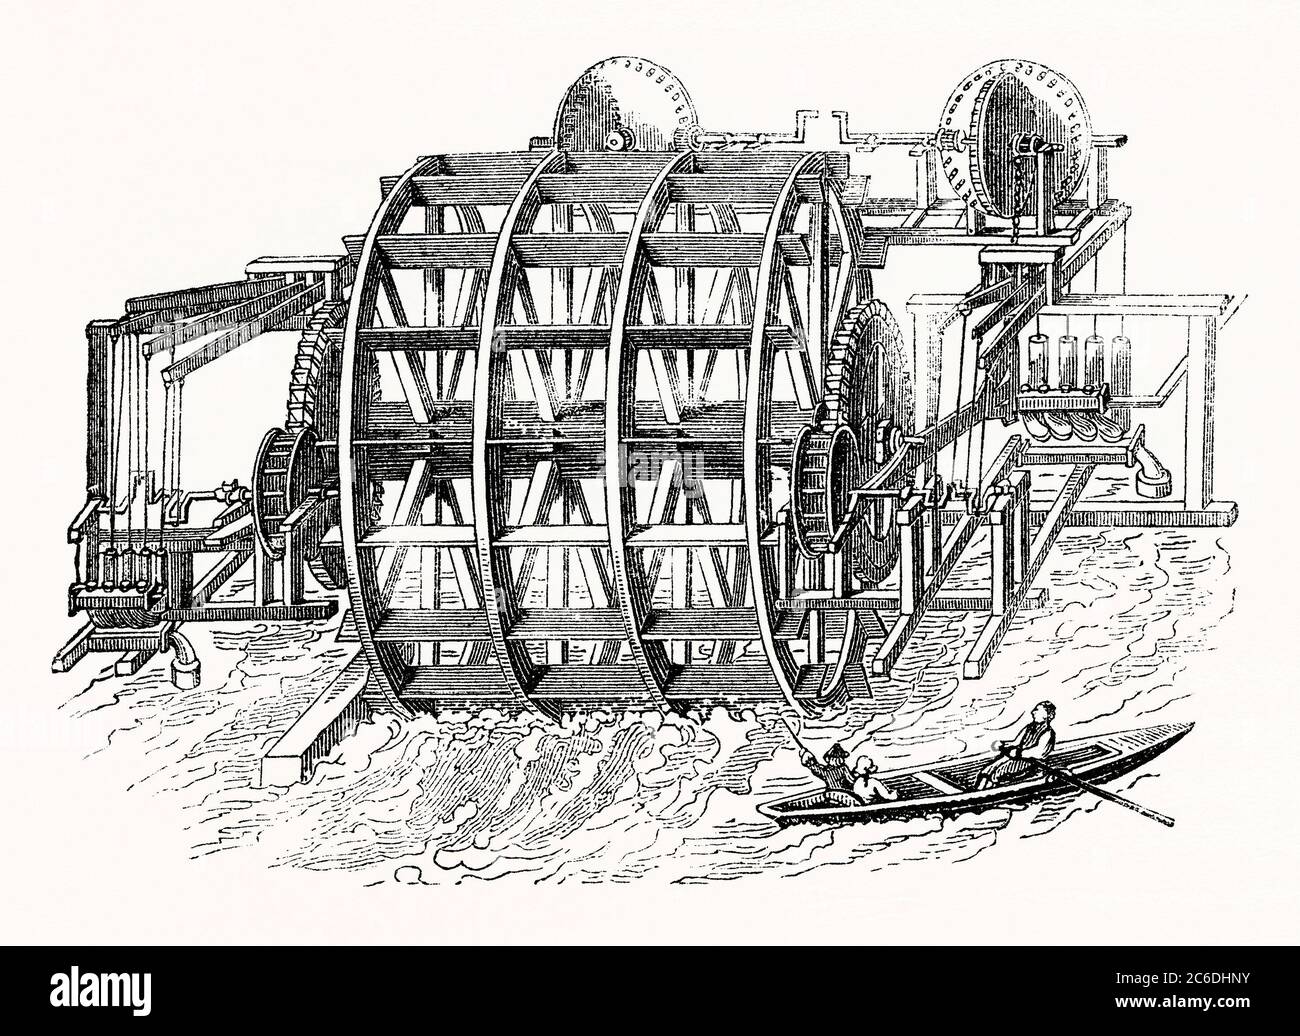 Una vecchia incisione del vecchio ponte di Londra Waterworks all'inizio del 1700. La ruota fu costruita da George Sorocold, c 1700. Era di 20 piedi di diametro e aveva 26 lame 14 piedi di lunghezza. Ha guidato otto pompe per mezzo di alberi a gomiti e travi oscillanti e potrebbe sollevare più di 2,500 tonnellate di acqua 120 piedi di altezza al giorno. La ruota dell'acqua potrebbe essere sollevata o abbassata quando il livello del Tamigi è cambiato quando gli assali sono stati montati su leve imperniate. Sul Ponte di Londra c'erano quattro ruote d'acqua che fornivano acqua alla città. Foto Stock